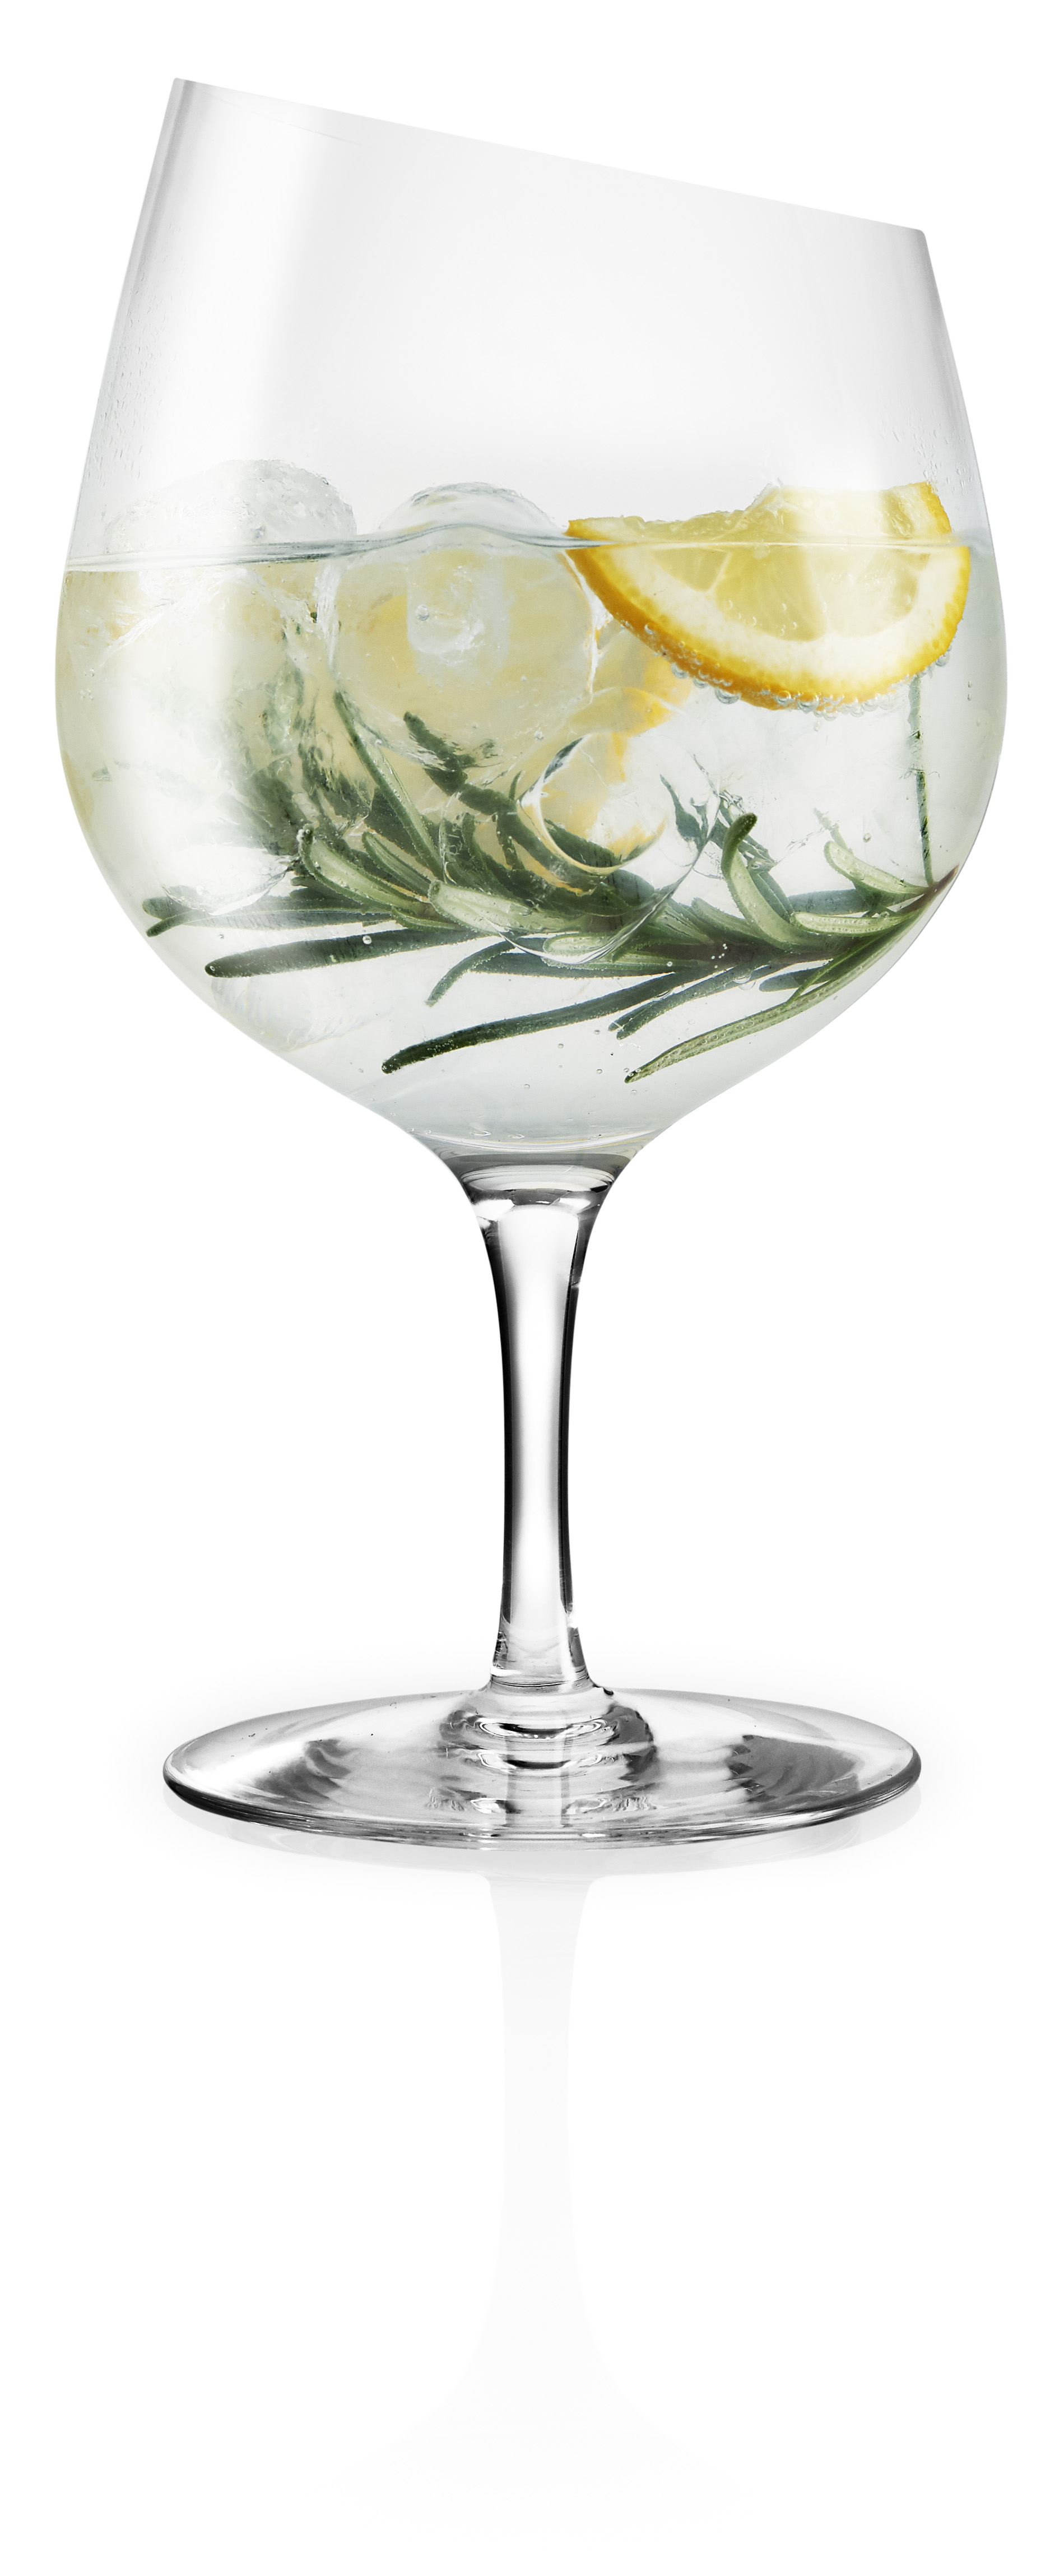 Eva Solo - Gin Glass (541008)